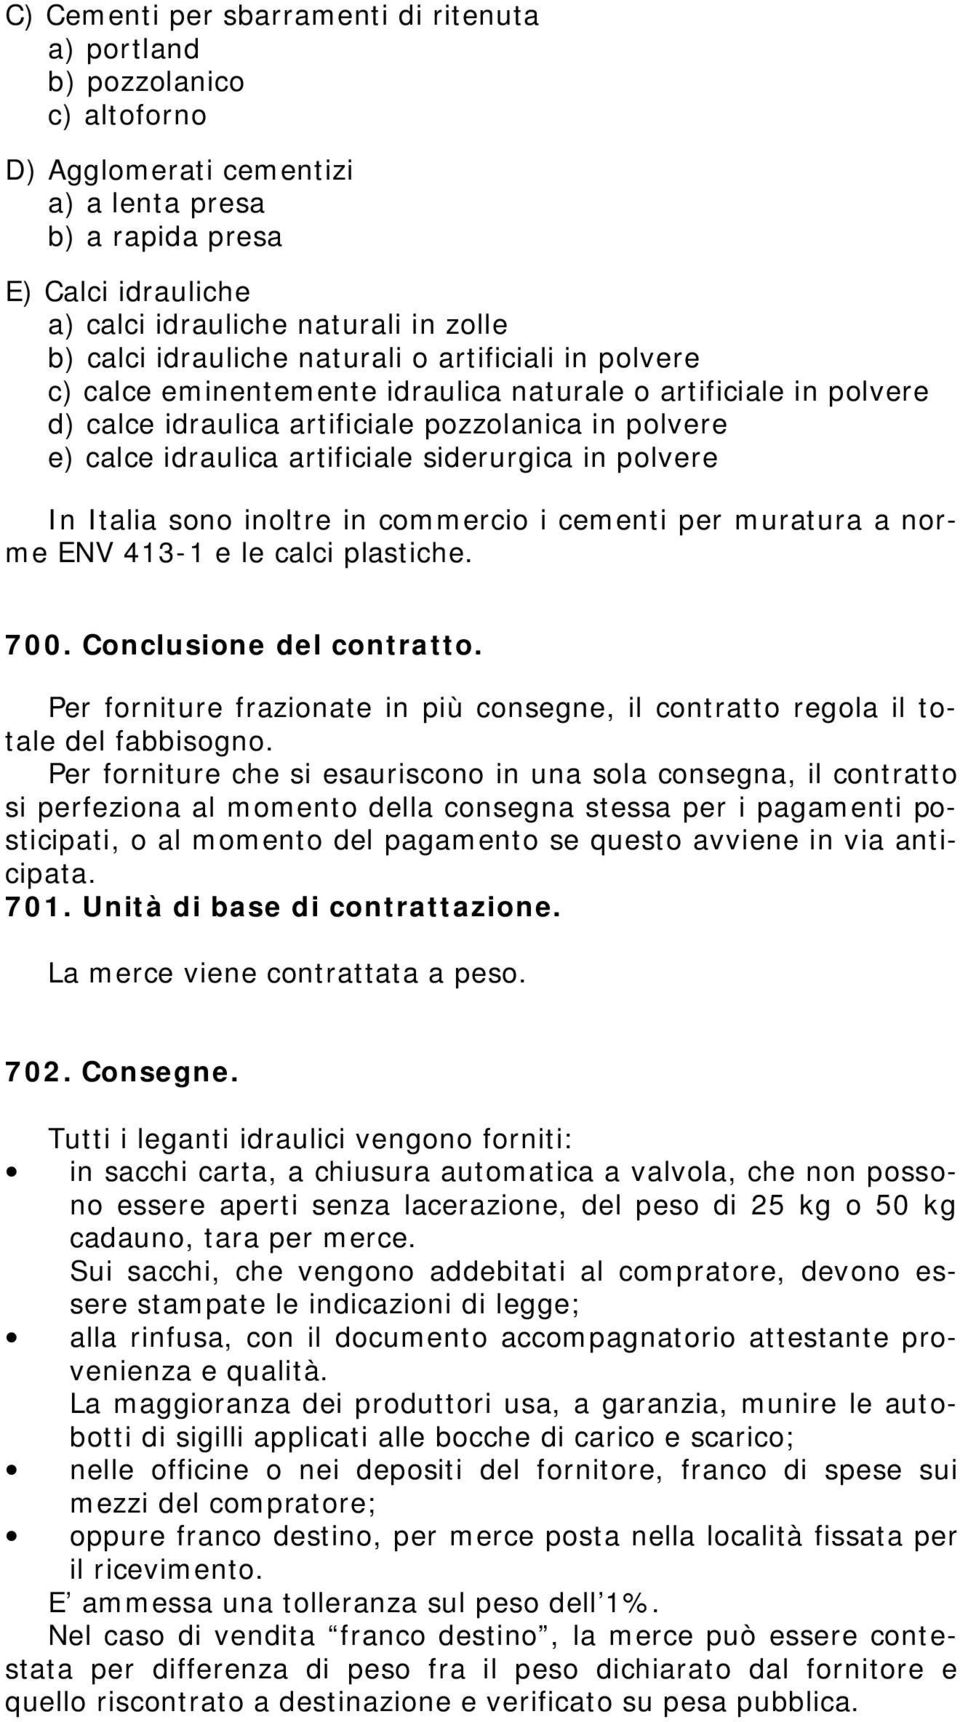 artificiale siderurgica in polvere In Italia sono inoltre in commercio i cementi per muratura a norme ENV 413-1 e le calci plastiche. 700. Conclusione del contratto.